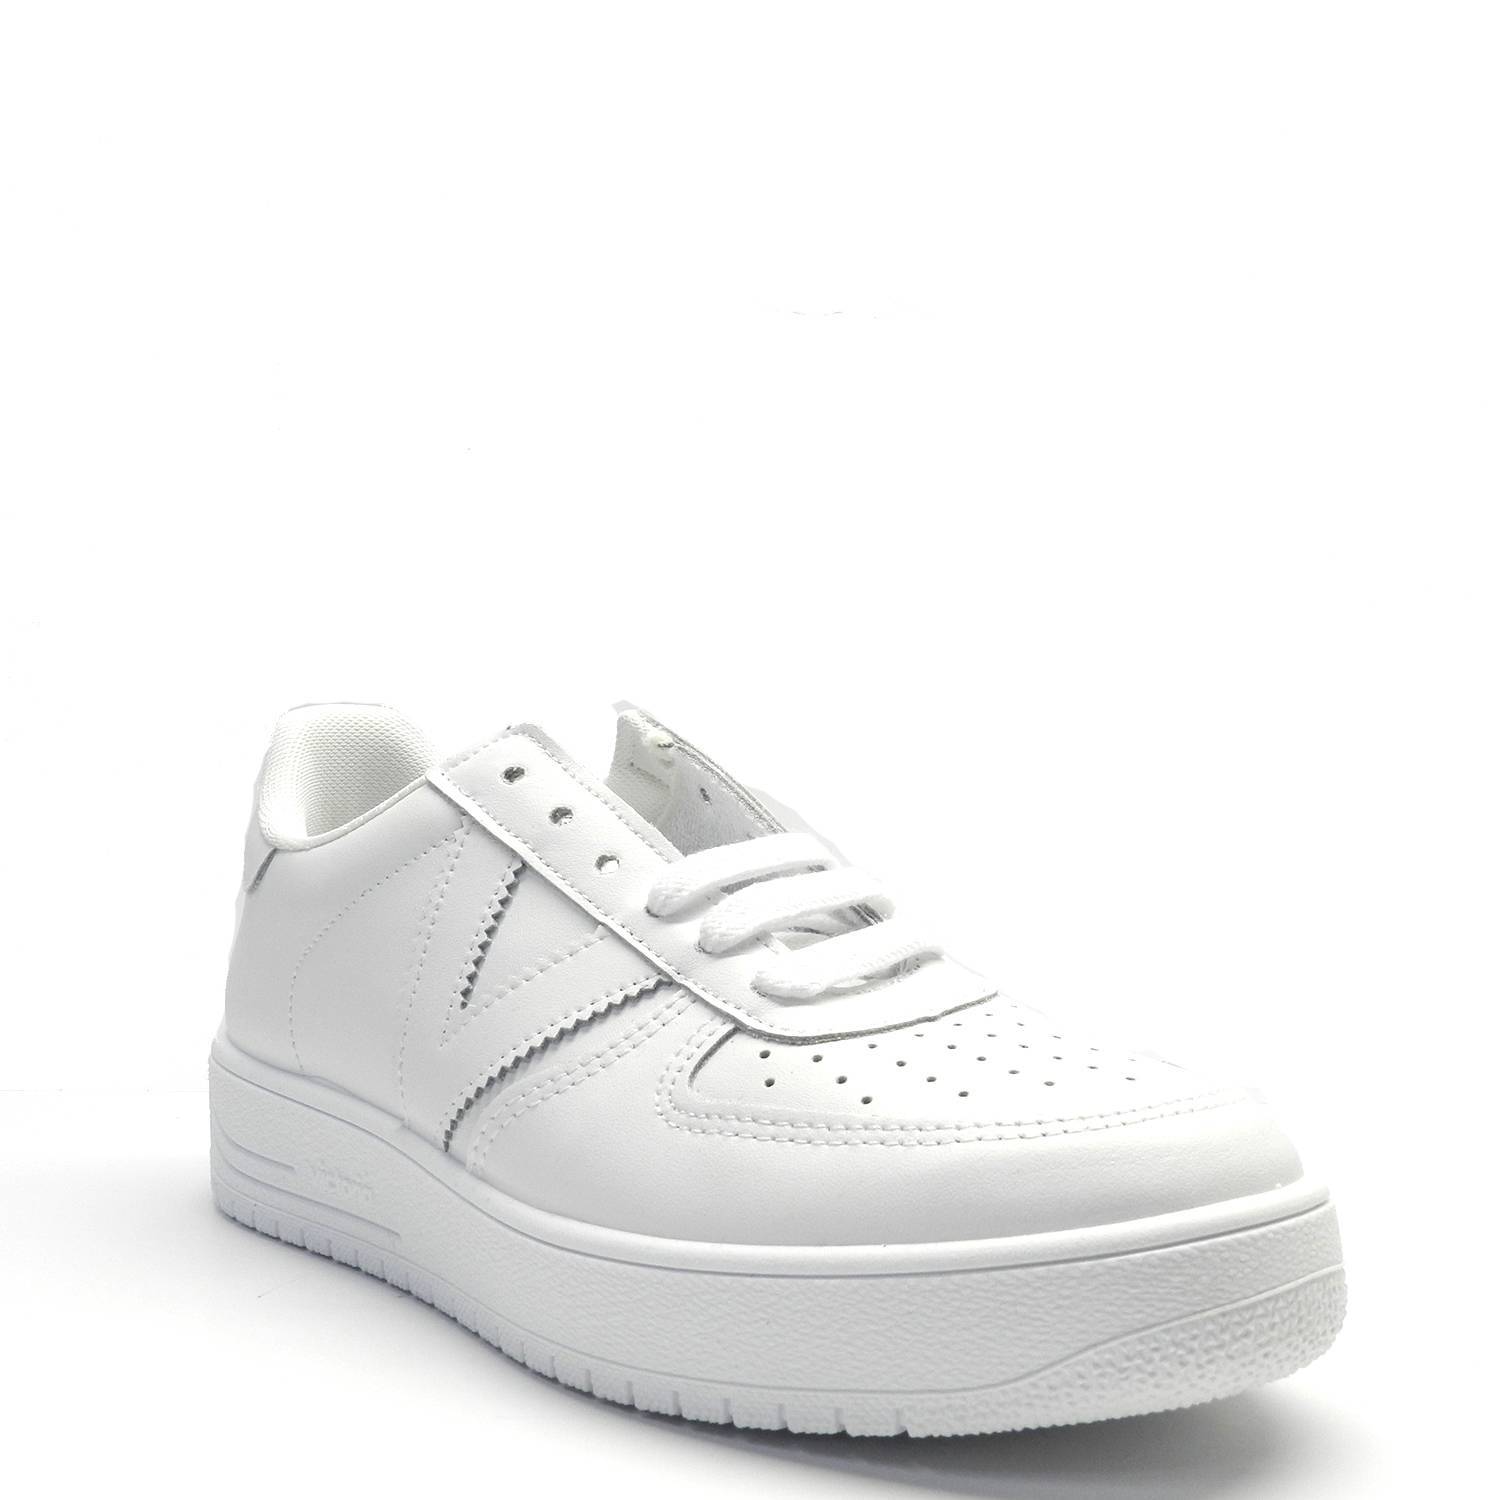 Zapatillas de la marca Victoria, modelo Siempre en color blanco. Zapatillas deportivas de piel, con logo en el lateral y puntera perforada para favorecer la transpiración. Suela gruesa de gran comodidad.